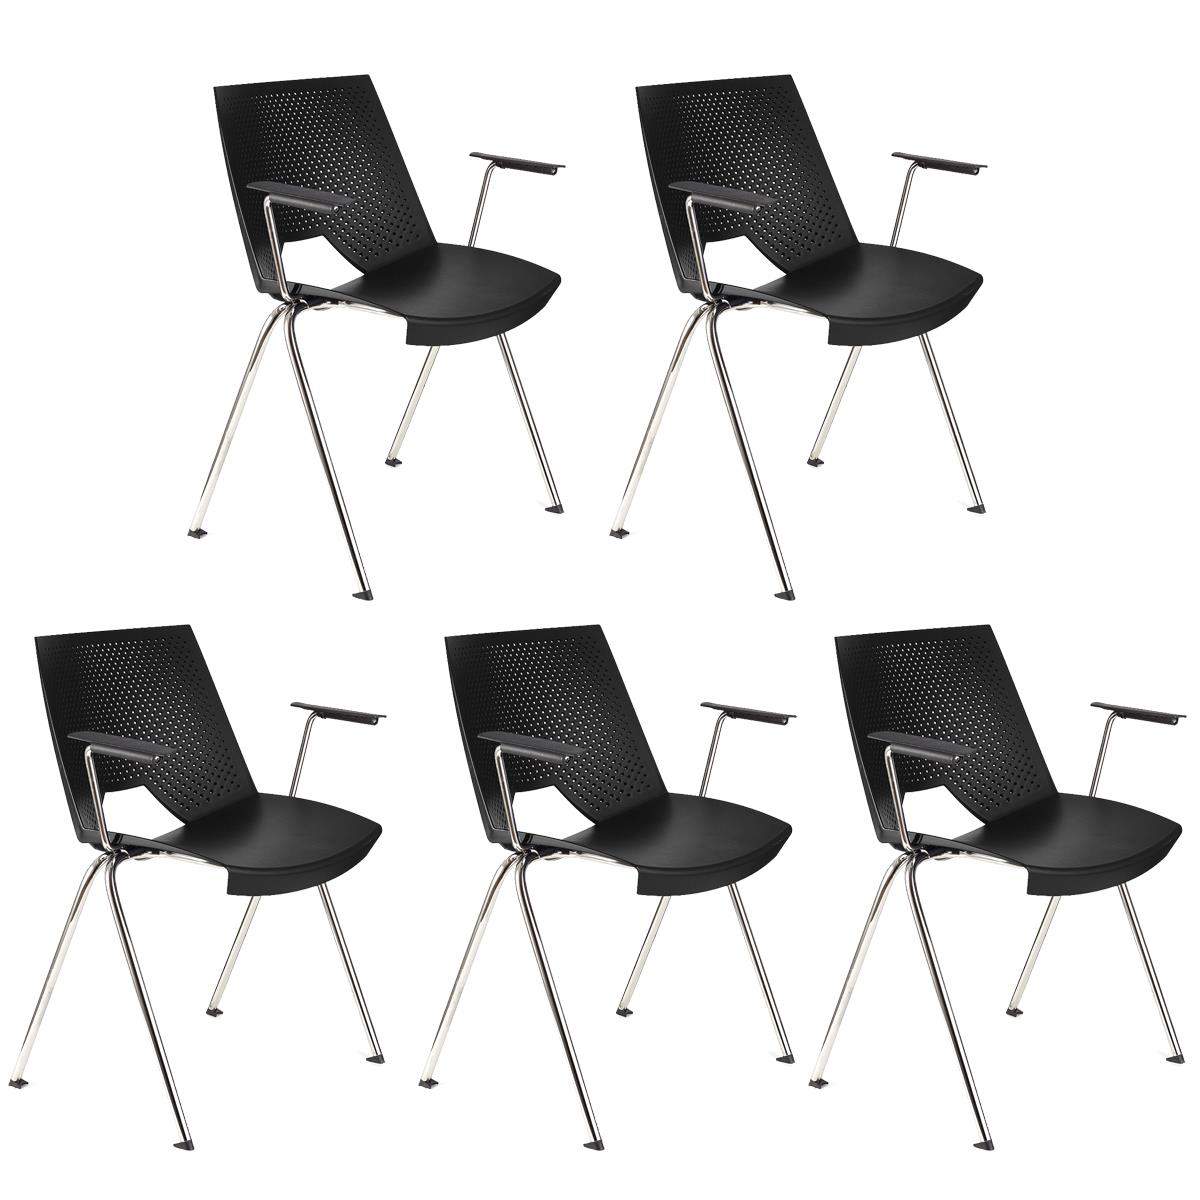 Lote de 5 sillas de Confidente ENZO CON BRAZOS, Cómodas y Prácticas, Apilables, Color Negro